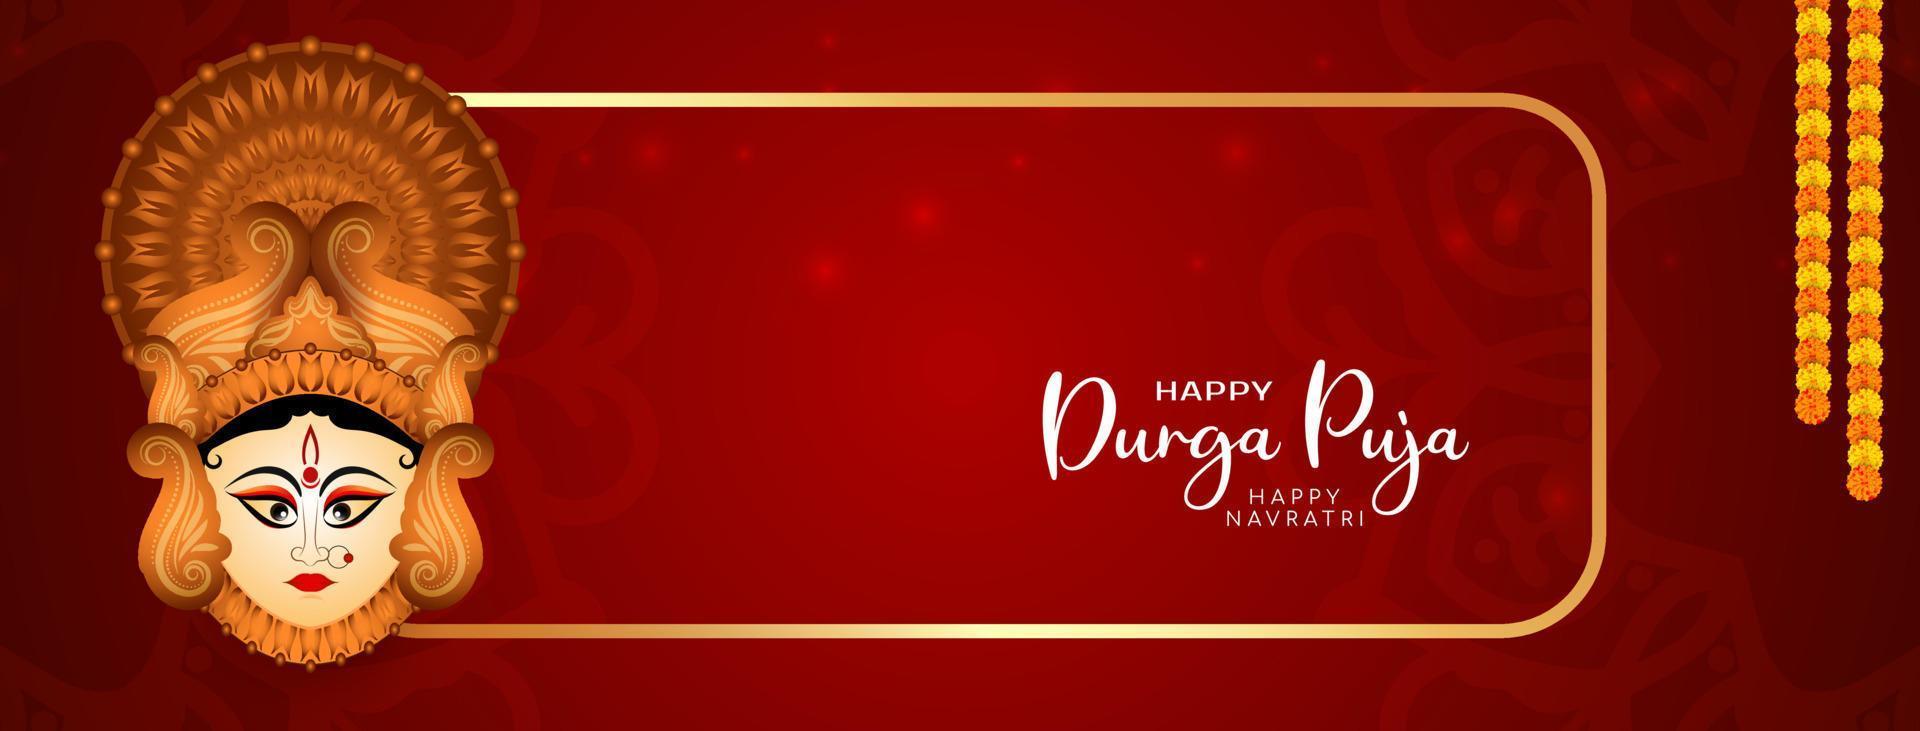 religioso Durga puja e contento Navratri Festival celebrazione bandiera design vettore